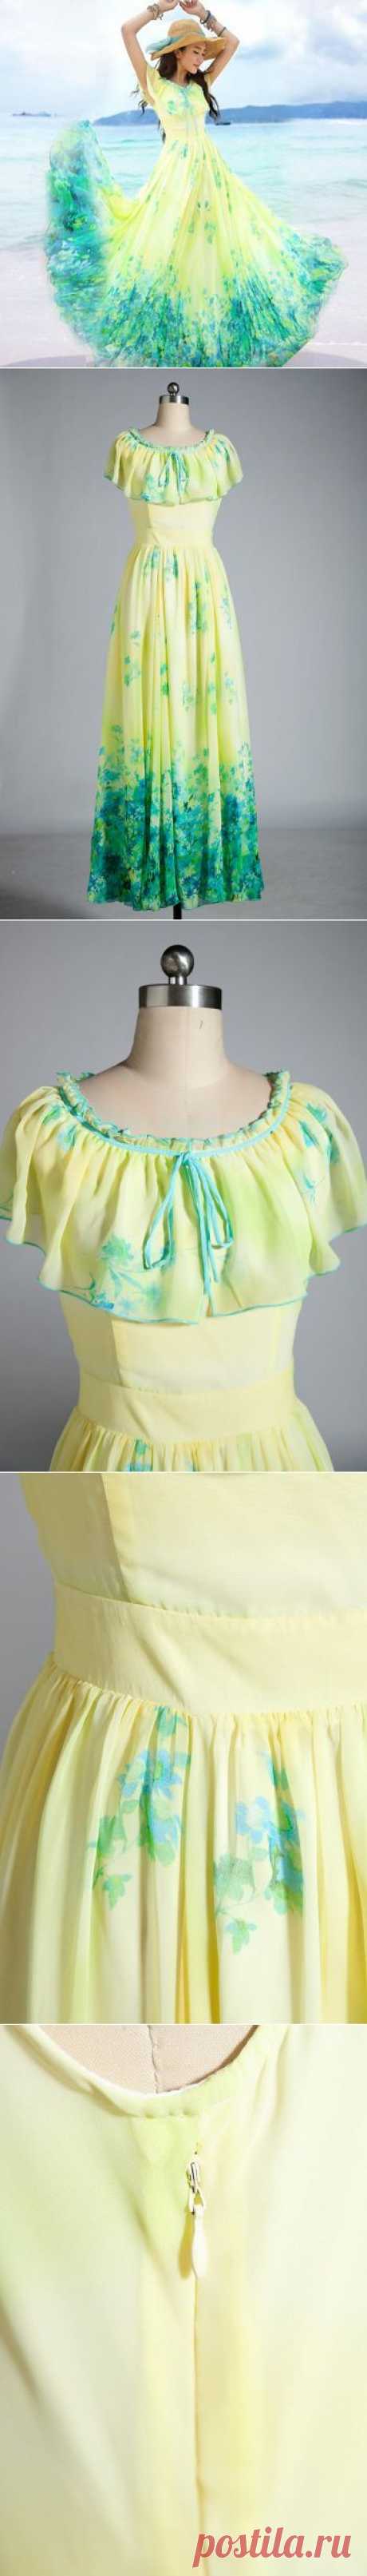 S xxl летнее платье желтый шифон цельный платье богемия пляж длинное платье, принадлежащий категории Платья и относящийся к Одежда и аксессуары для женщин на сайте AliExpress.com | Alibaba Group